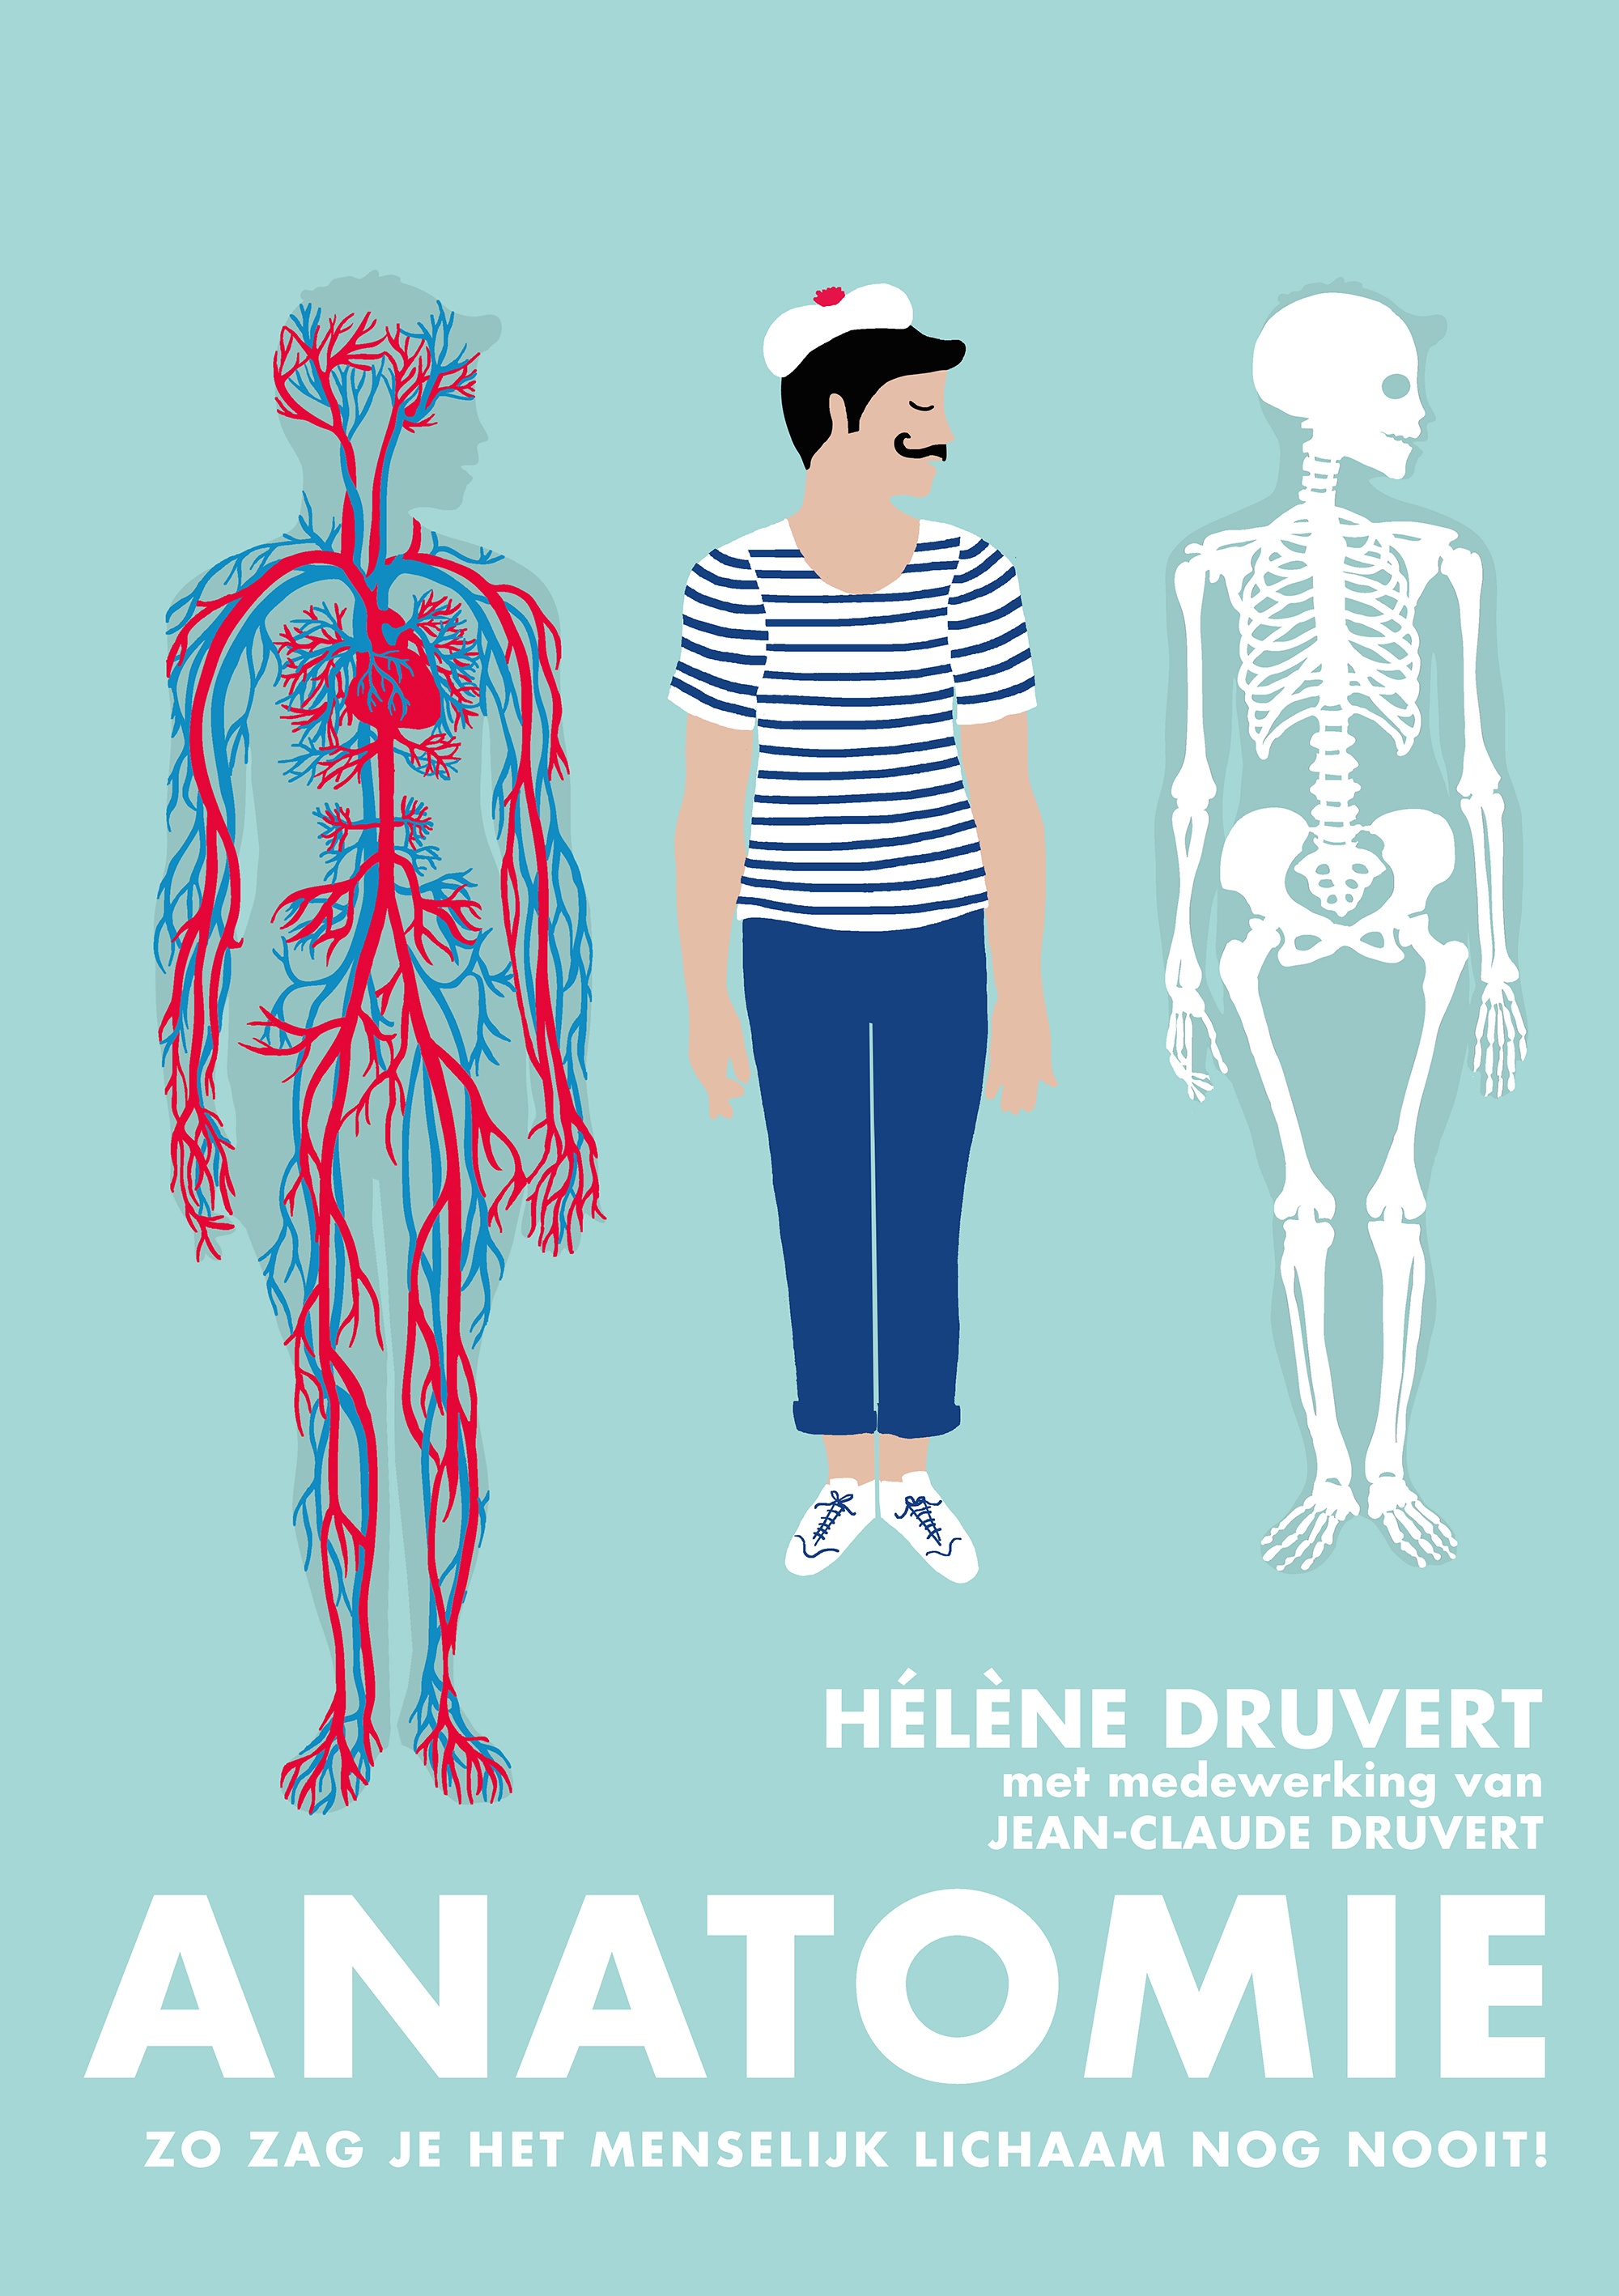 Je bekijkt nu Review: Anatomie. Zo zag je het menselijk lichaam nog nooit